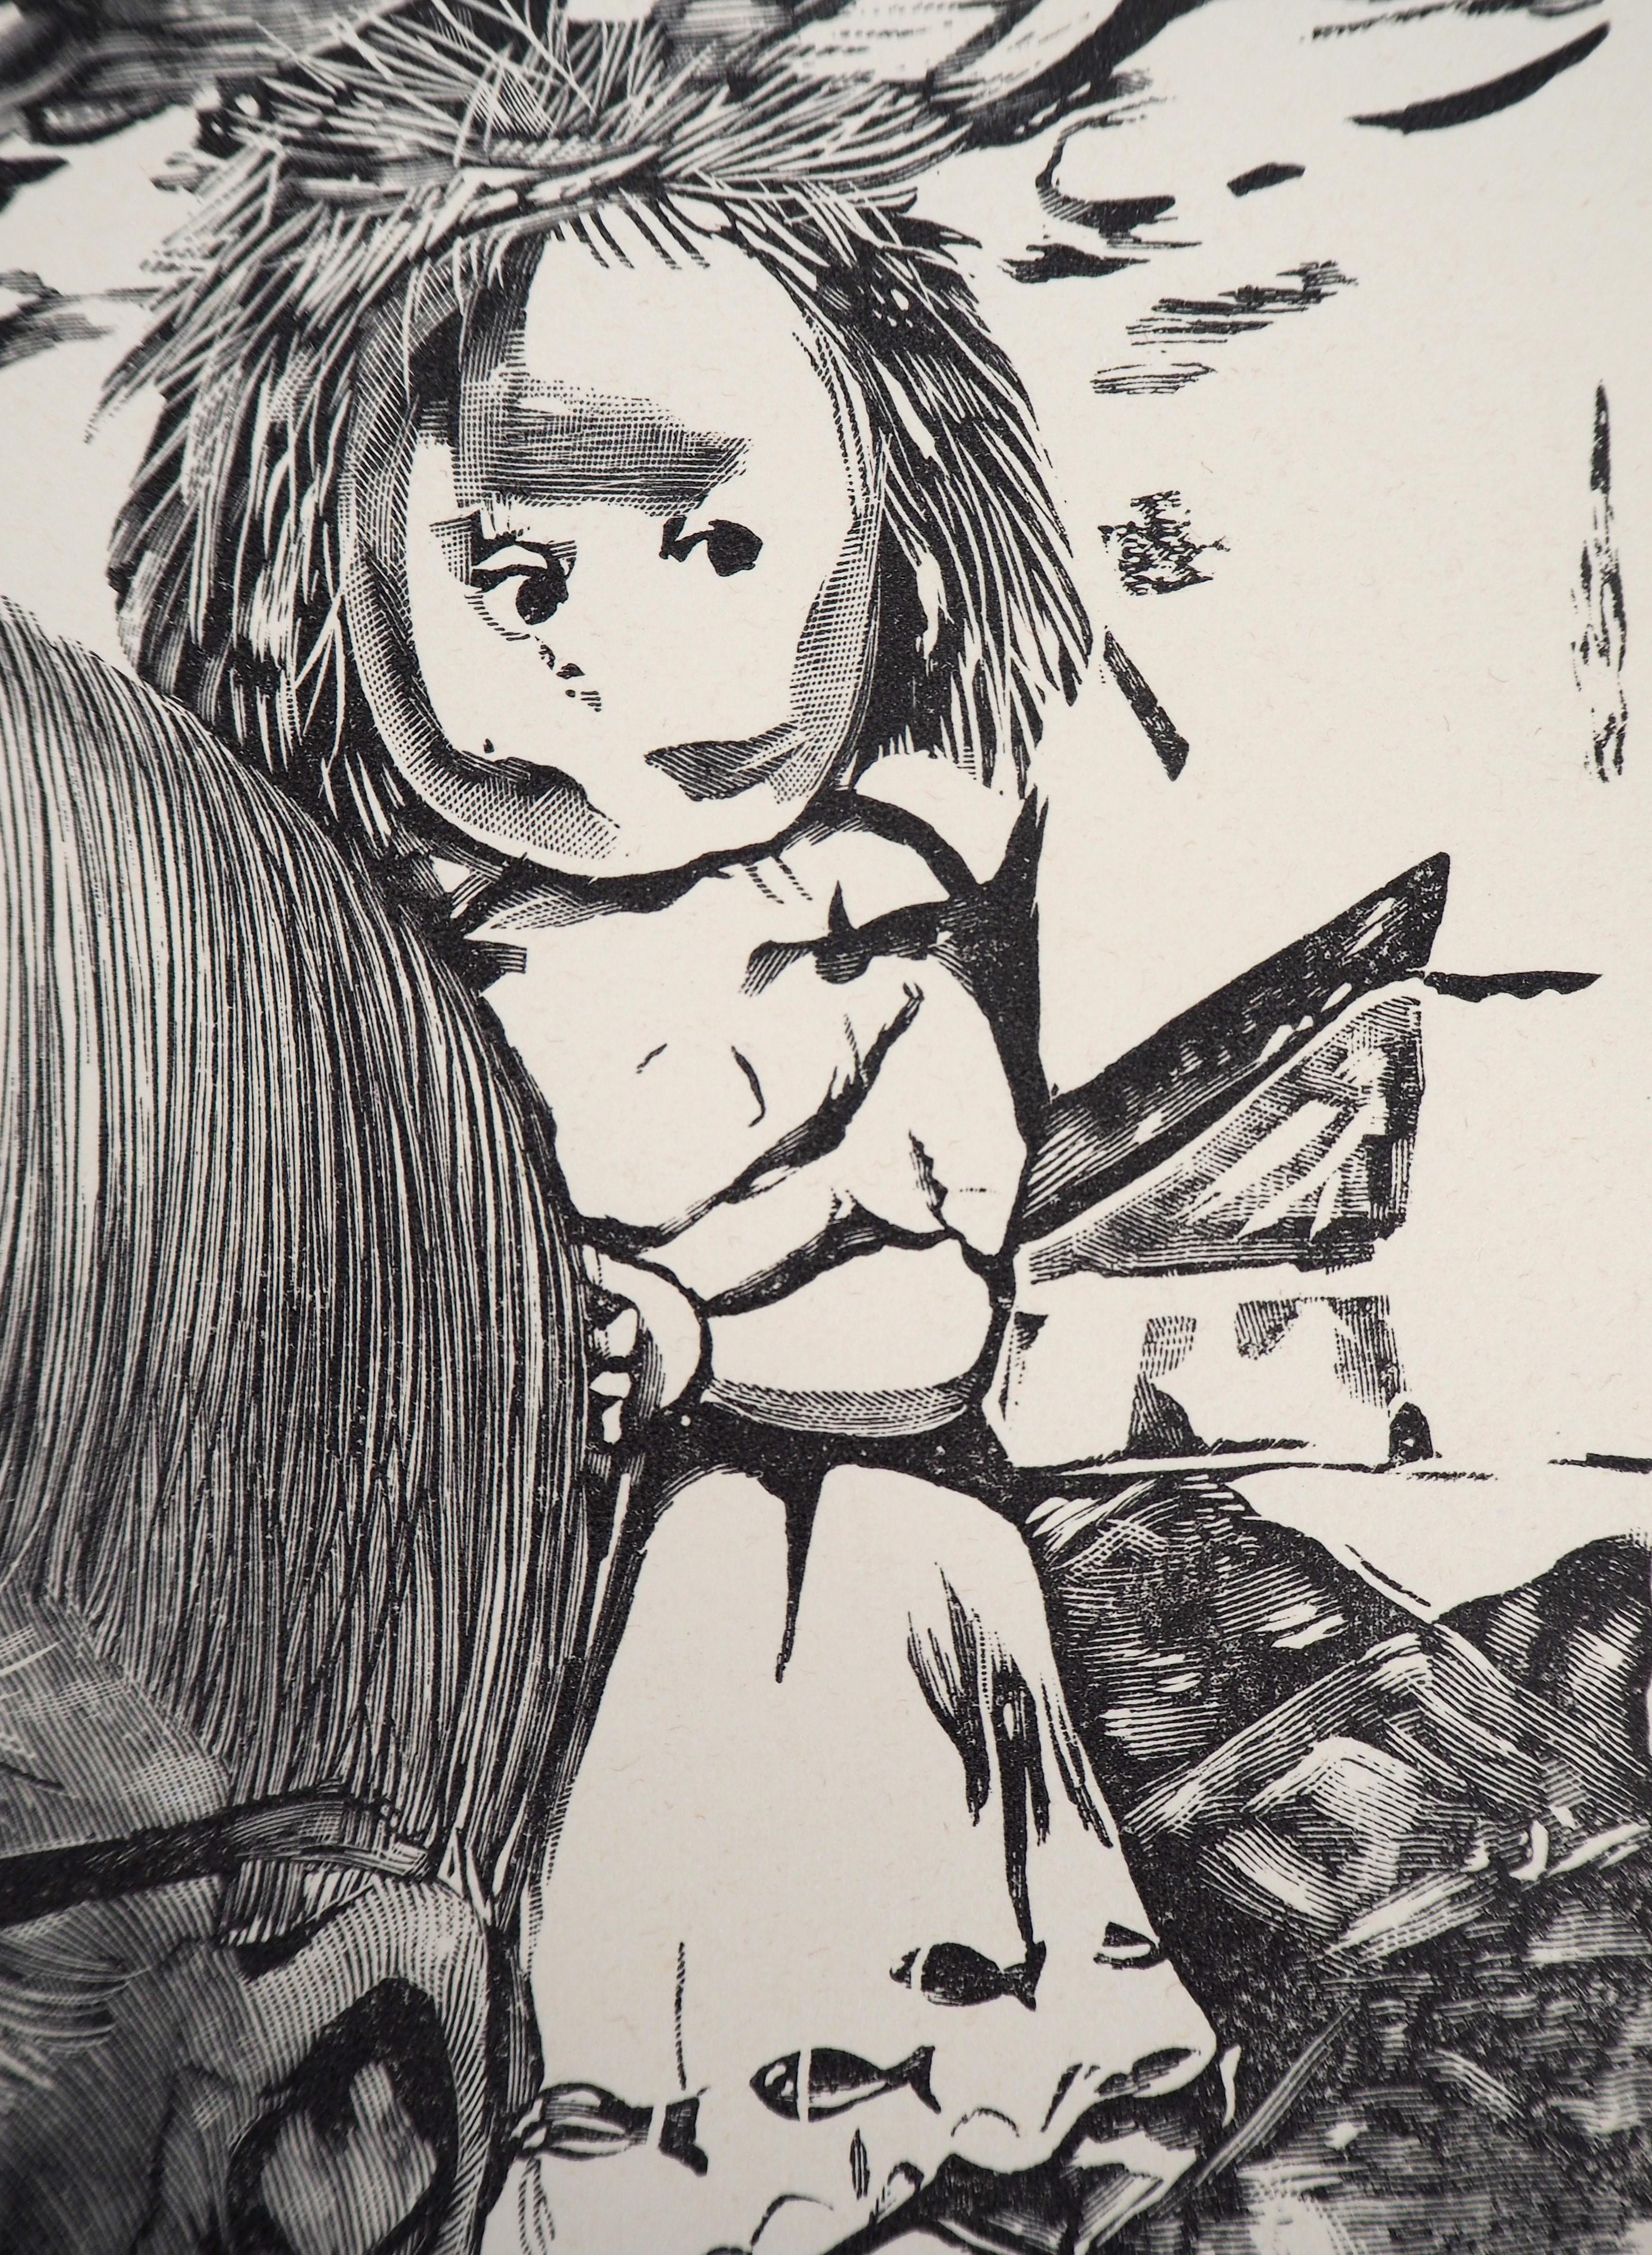 Leonard Tsuguharu FOUJITA
Self Portrait With Children, 1960

Original woodcut
On vellum 37 x 28 cm (c. 15 x 11 in)

REFERENCES : Catalogue Raisonne Sylvie Buisson #60.109

Ausgezeichneter Zustand